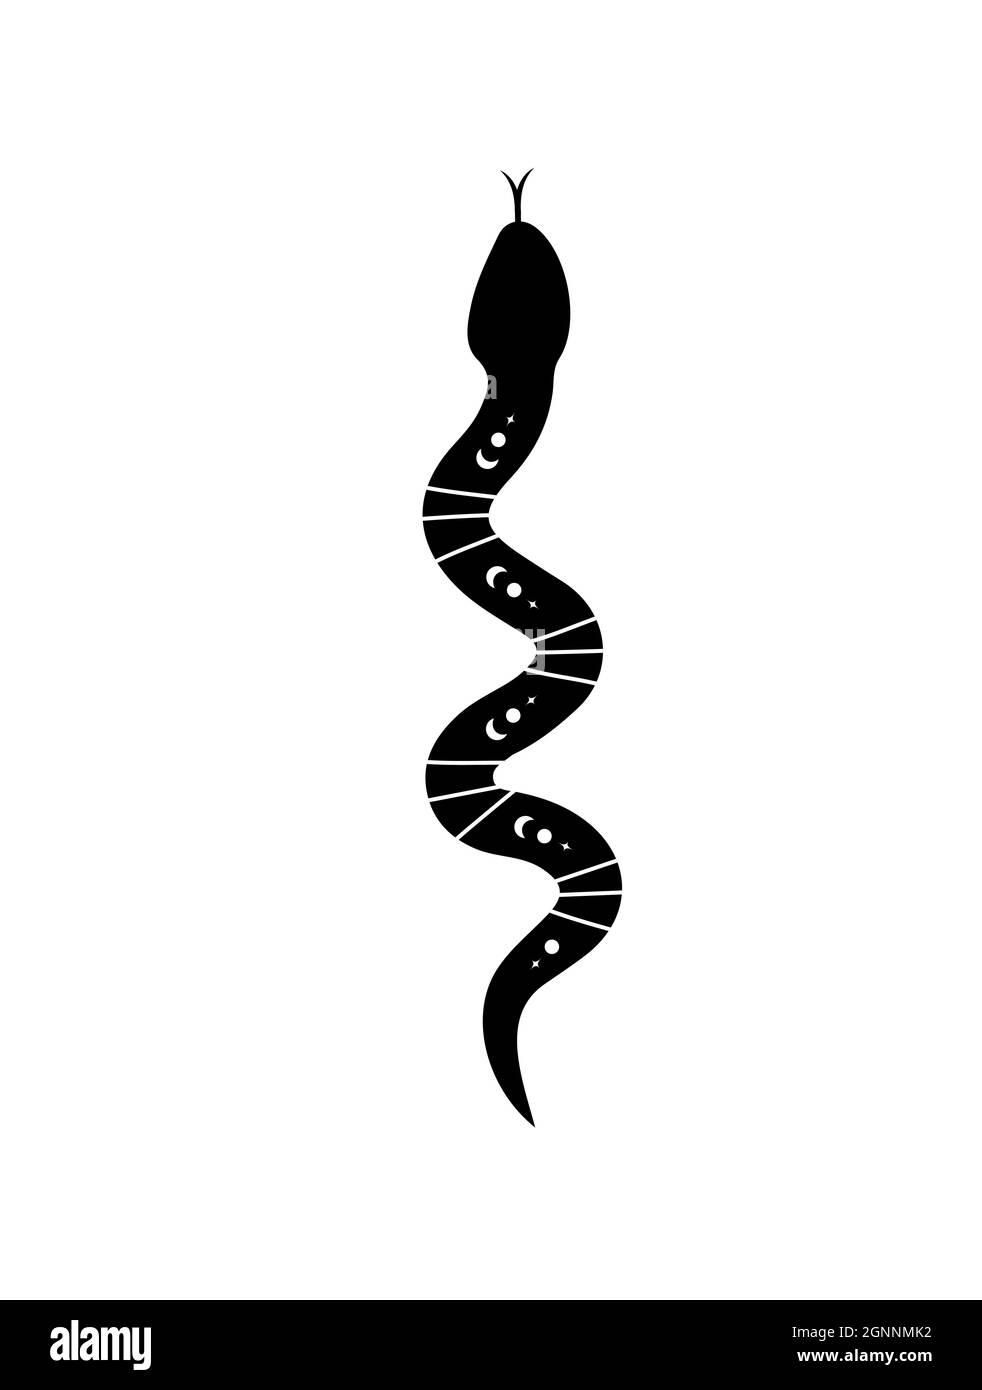 Serpente magico in stile boho con la luna. Simbolo mistico in uno stile minimalista alla moda. Illustrazione vettoriale esoterica Illustrazione Vettoriale